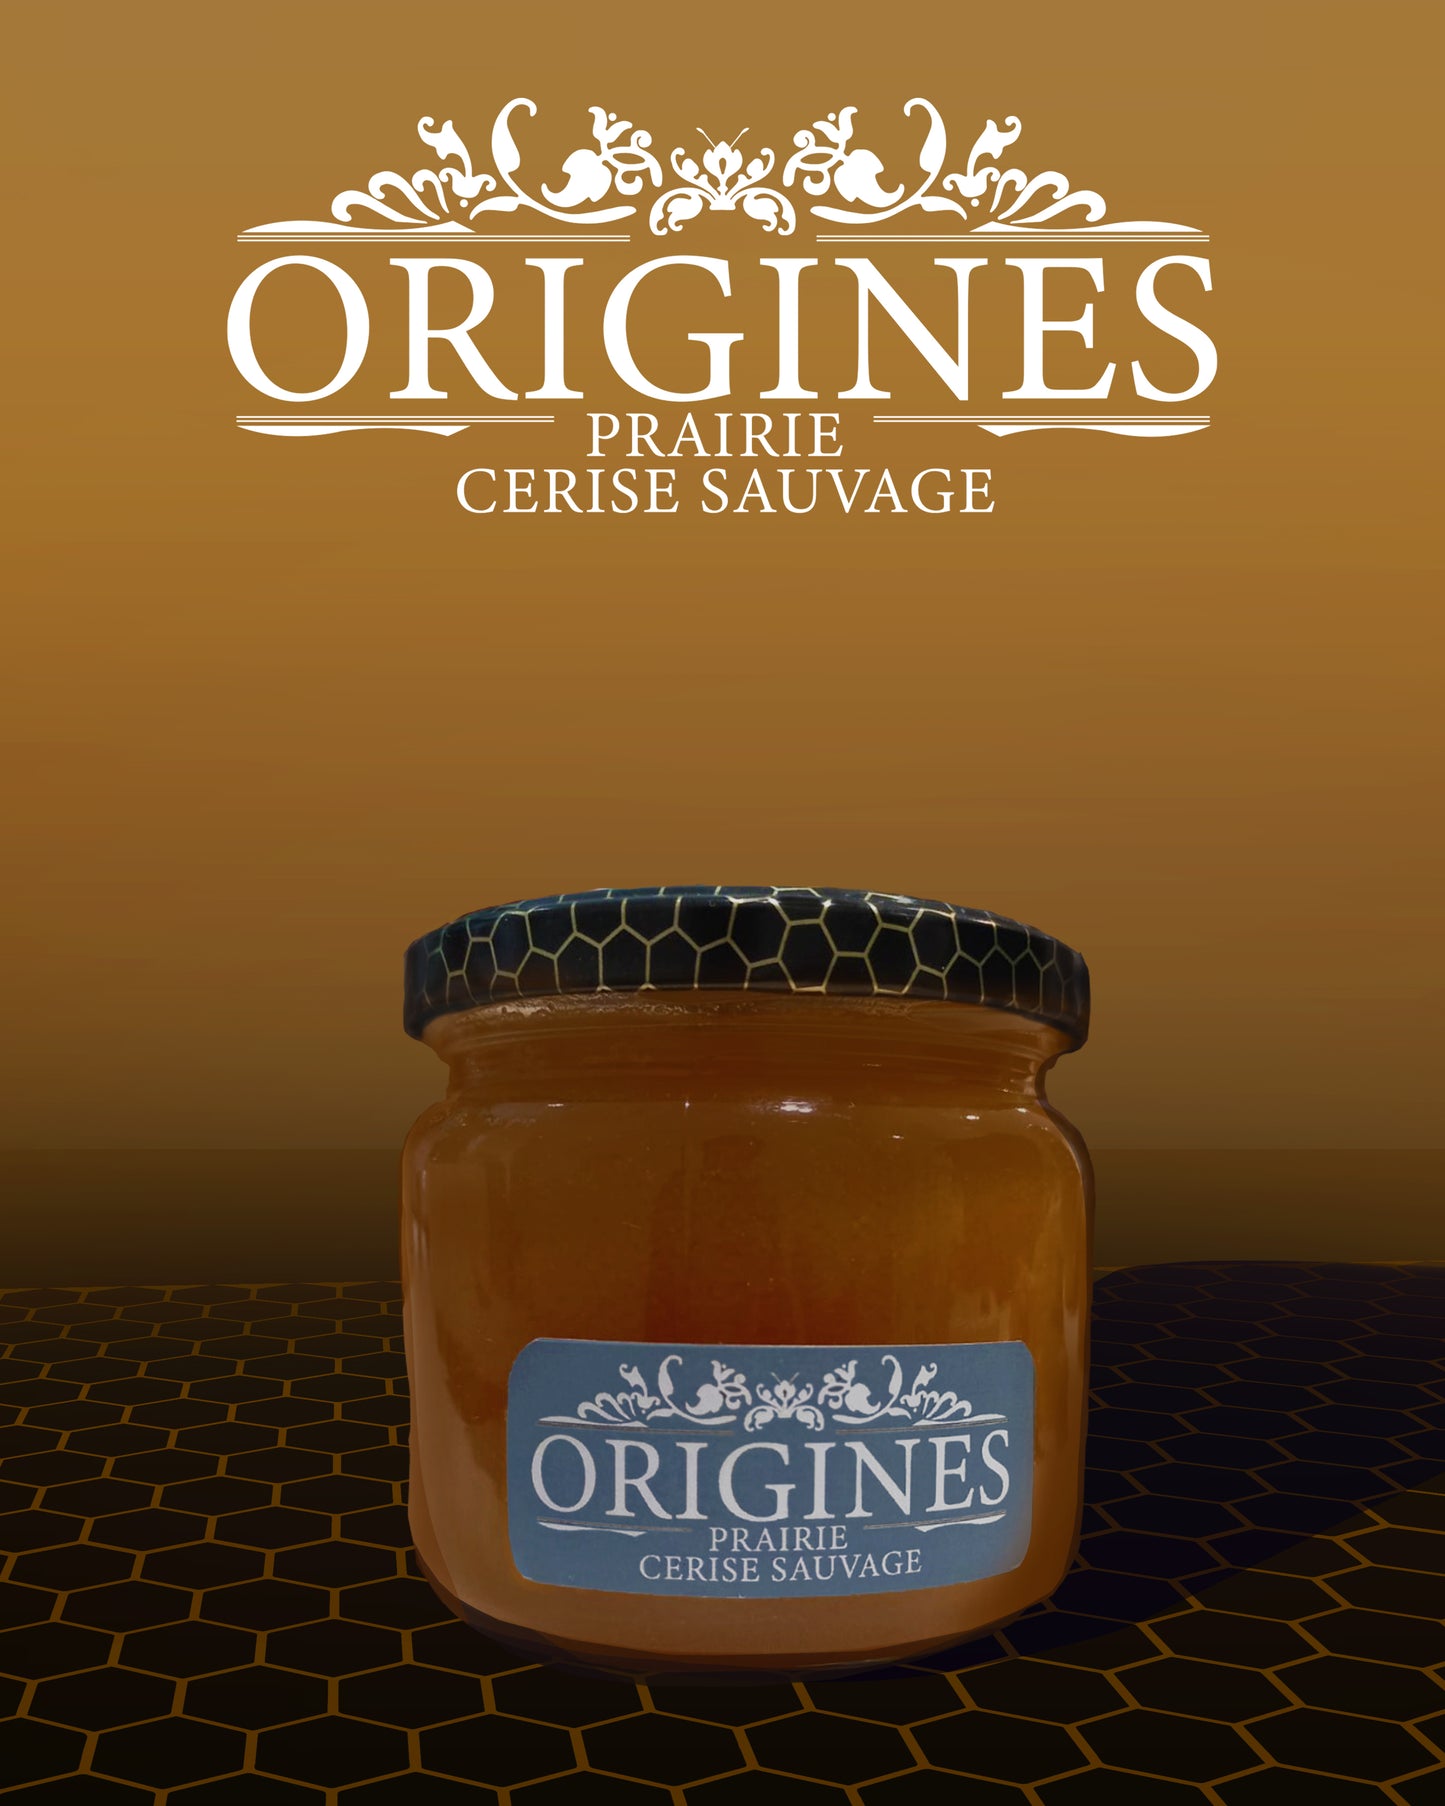 Pot de miel de cerisier sauvage de 450 g, étiqueté avec soin, contenant un miel d'une couleur doré foncé, capturant la riche saveur de cette variété de miel rare et délicieuse.